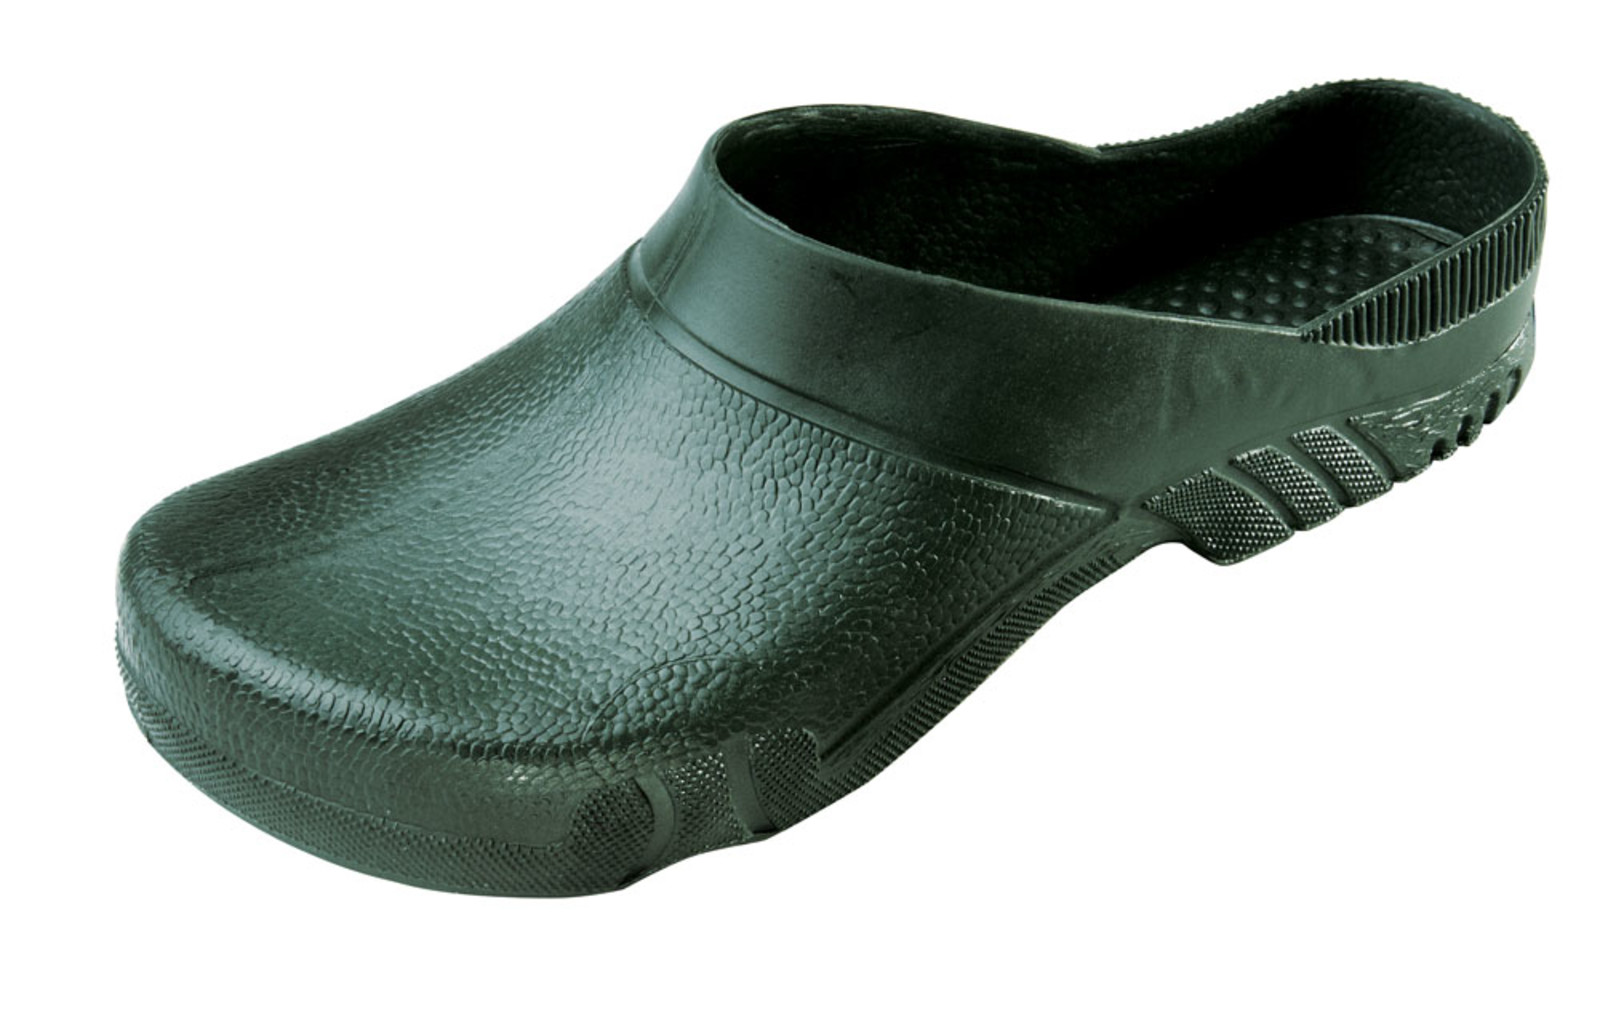 Galoše Boots Birba  - veľkosť: 41-42, farba: olivová zelená